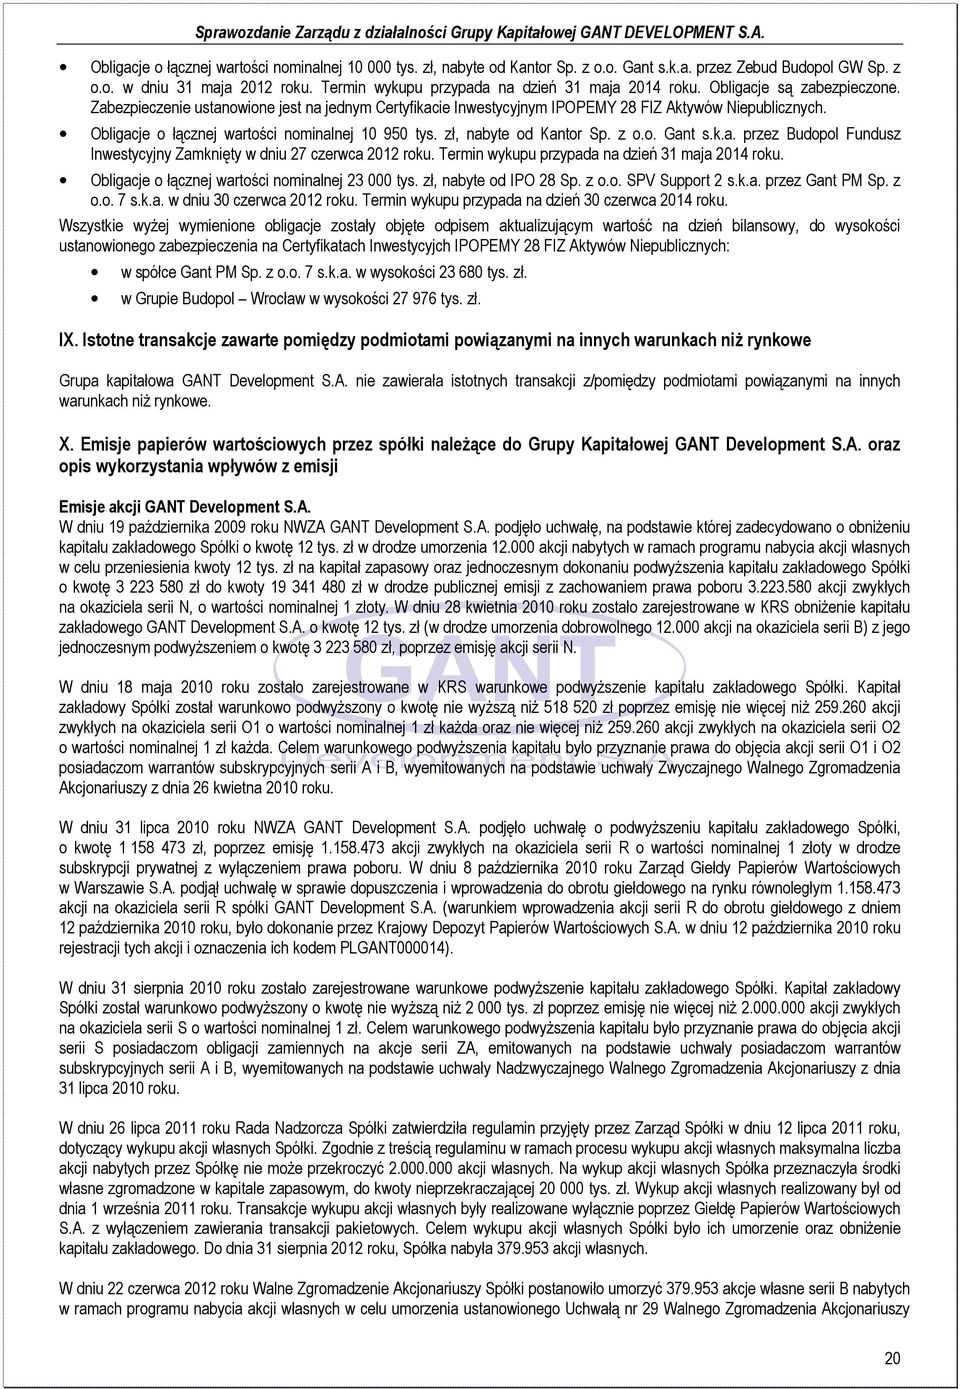 Obligacje o łącznej wartości nominalnej 10 950 tys. zł, nabyte od Kantor Sp. z o.o. Gant s.k.a. przez Budopol Fundusz Inwestycyjny Zamknięty w dniu 27 czerwca 2012 roku.